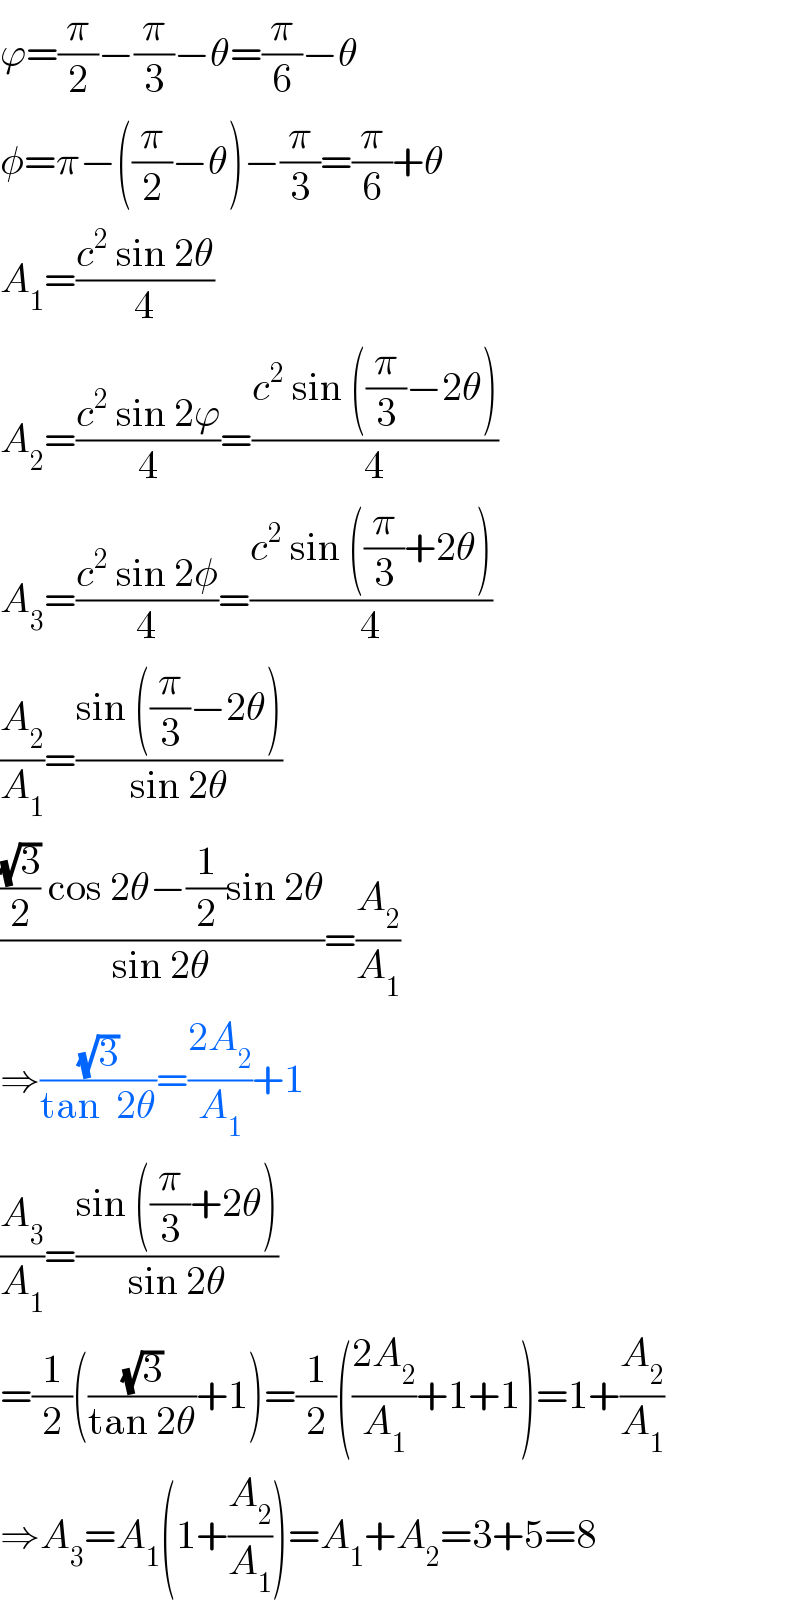 ϕ=(π/2)−(π/3)−θ=(π/6)−θ  φ=π−((π/2)−θ)−(π/3)=(π/6)+θ  A_1 =((c^2  sin 2θ)/4)  A_2 =((c^2  sin 2ϕ)/4)=((c^2  sin ((π/3)−2θ))/4)  A_3 =((c^2  sin 2φ)/4)=((c^2  sin ((π/3)+2θ))/4)  (A_2 /A_1 )=((sin ((π/3)−2θ))/(sin 2θ))  ((((√3)/2) cos 2θ−(1/2)sin 2θ)/(sin 2θ))=(A_2 /A_1 )  ⇒((√3)/(tan  2θ))=((2A_2 )/A_1 )+1  (A_3 /A_1 )=((sin ((π/3)+2θ))/(sin 2θ))  =(1/2)(((√3)/(tan 2θ))+1)=(1/2)(((2A_2 )/A_1 )+1+1)=1+(A_2 /A_1 )  ⇒A_3 =A_1 (1+(A_2 /A_1 ))=A_1 +A_2 =3+5=8  